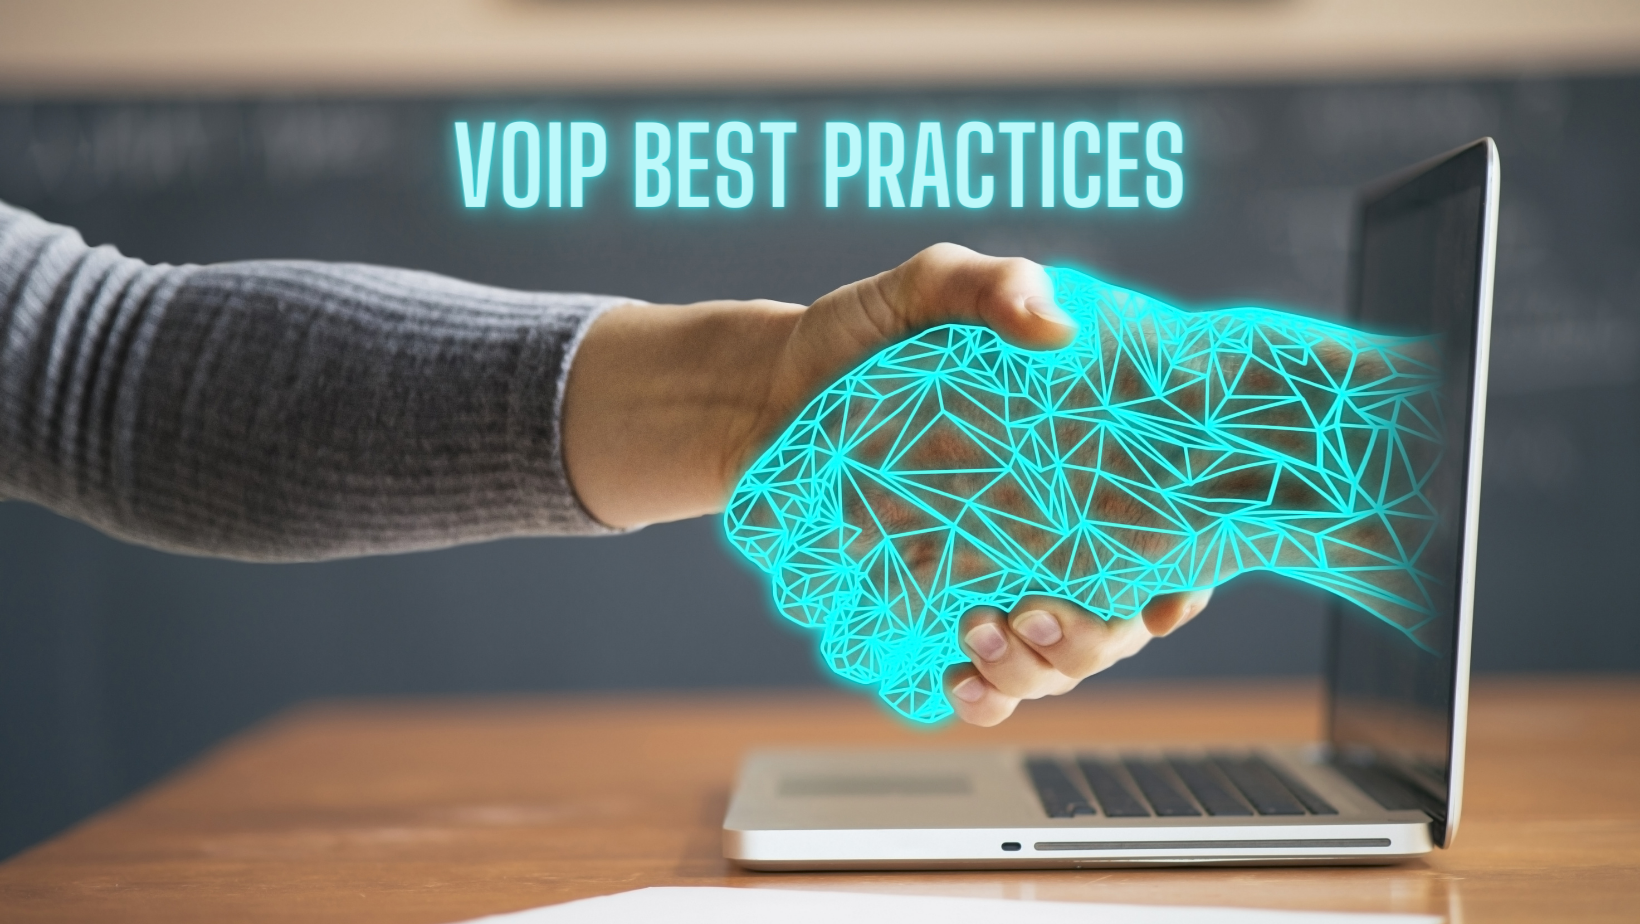 VoIP Best Practices